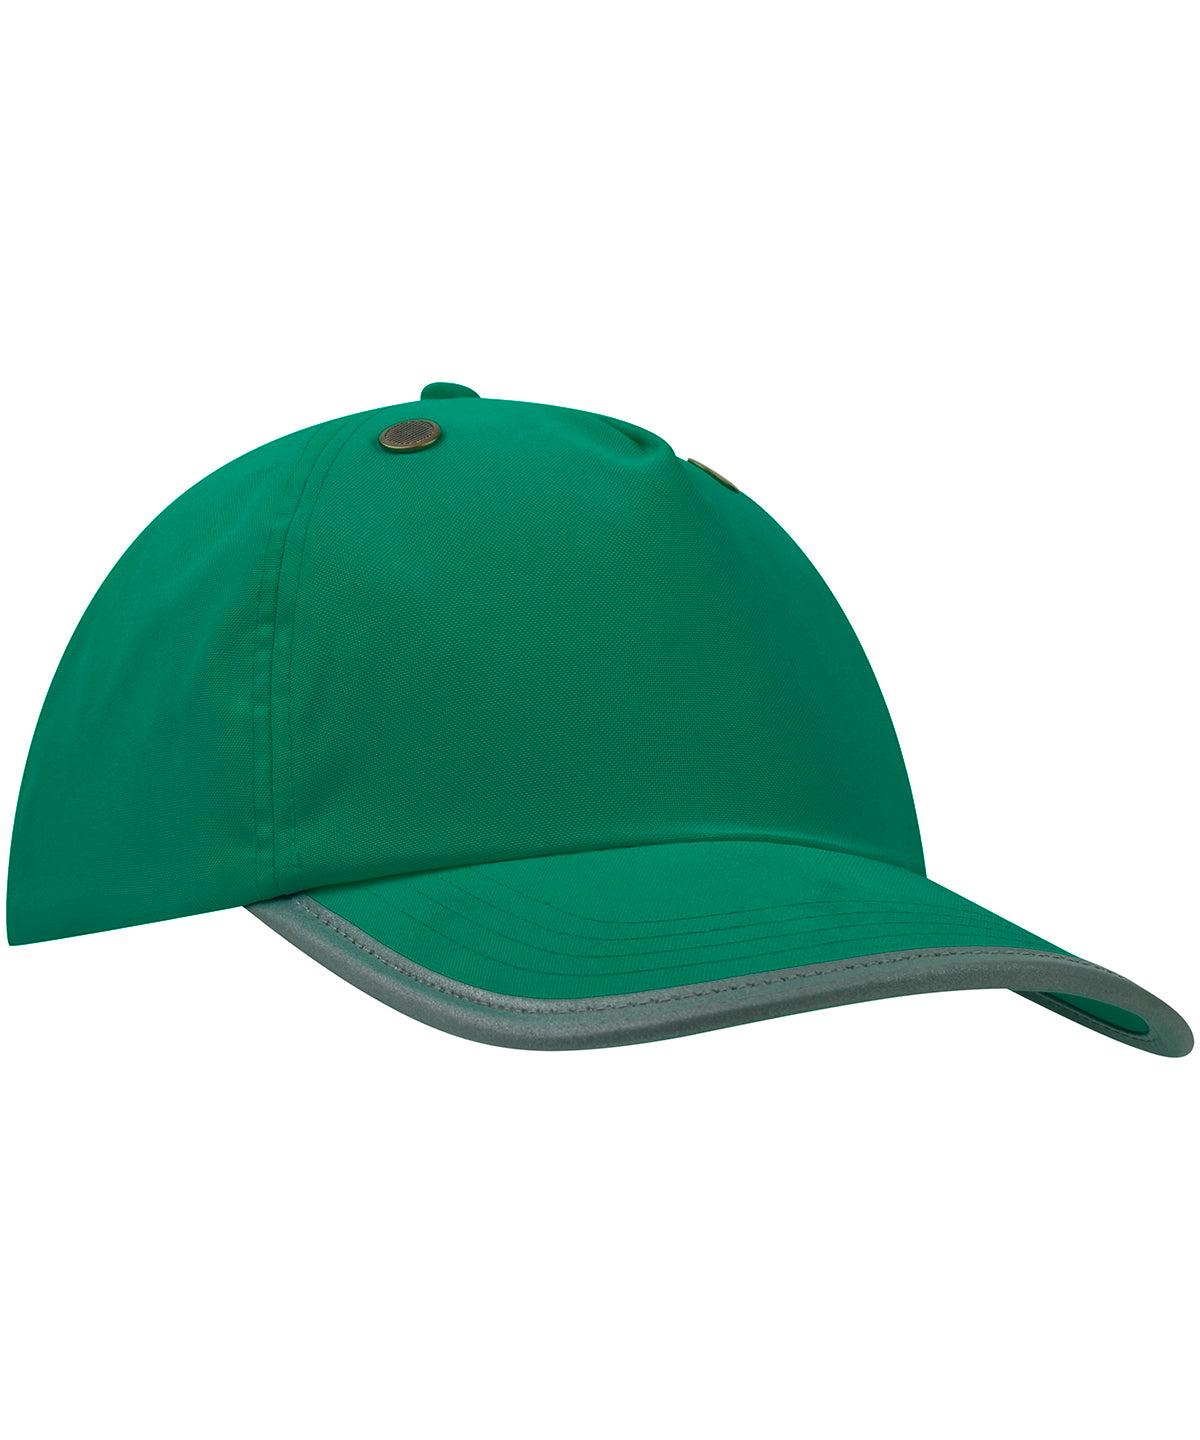 Húfur - Safety Bump Cap (TFC100)